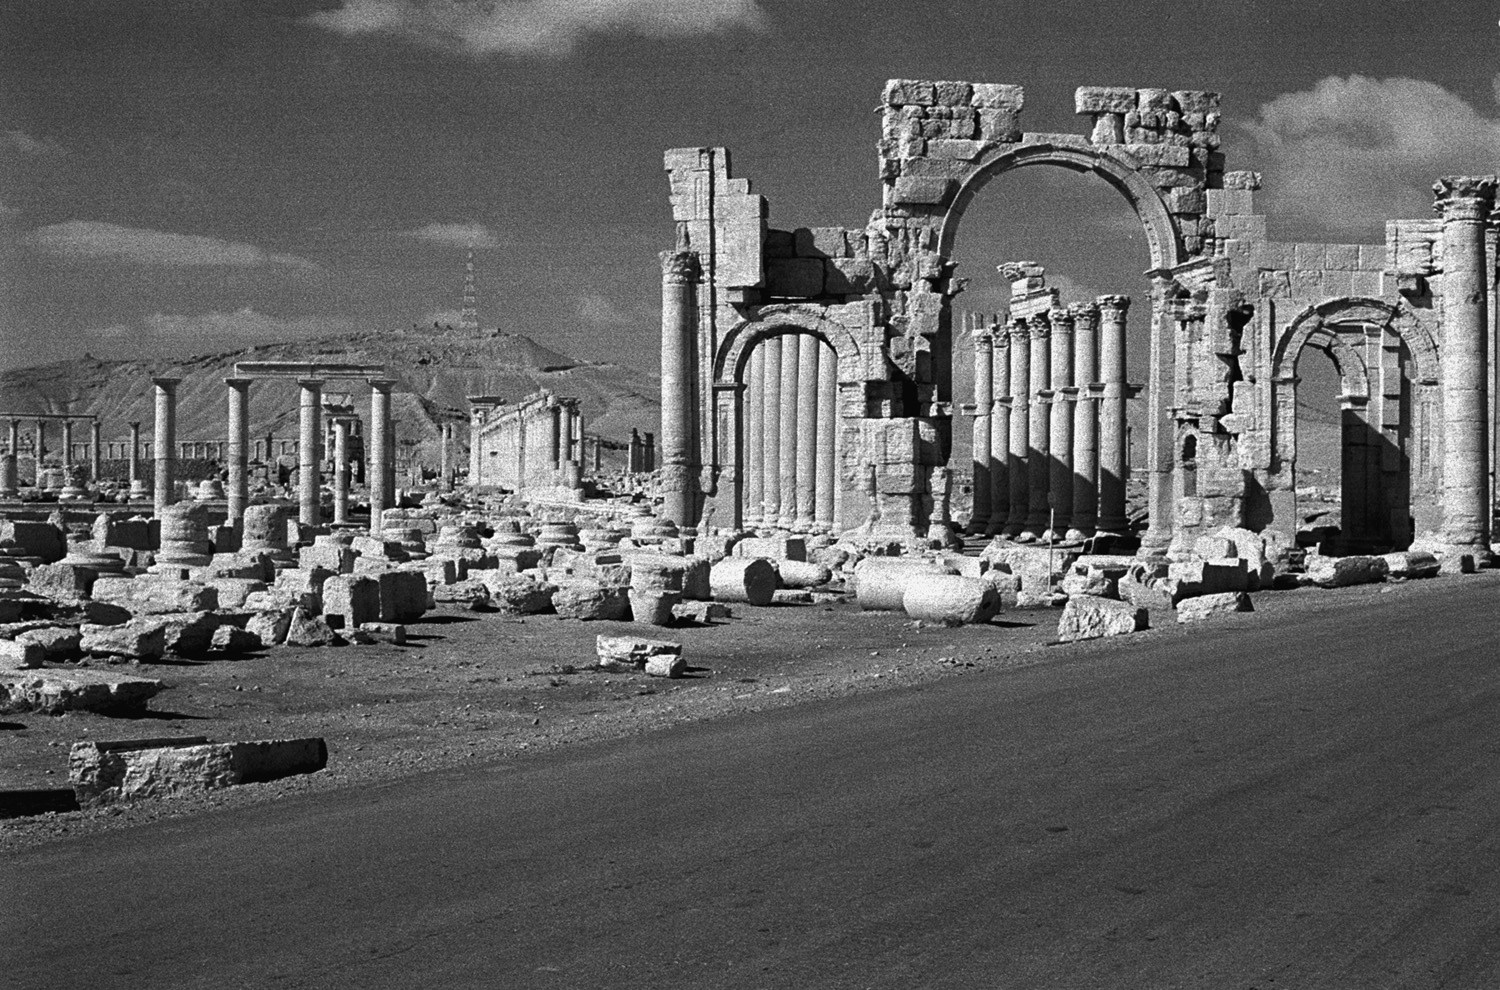 التاريخ السوري المعاصر - قوس النصر في تدمر عام 1985